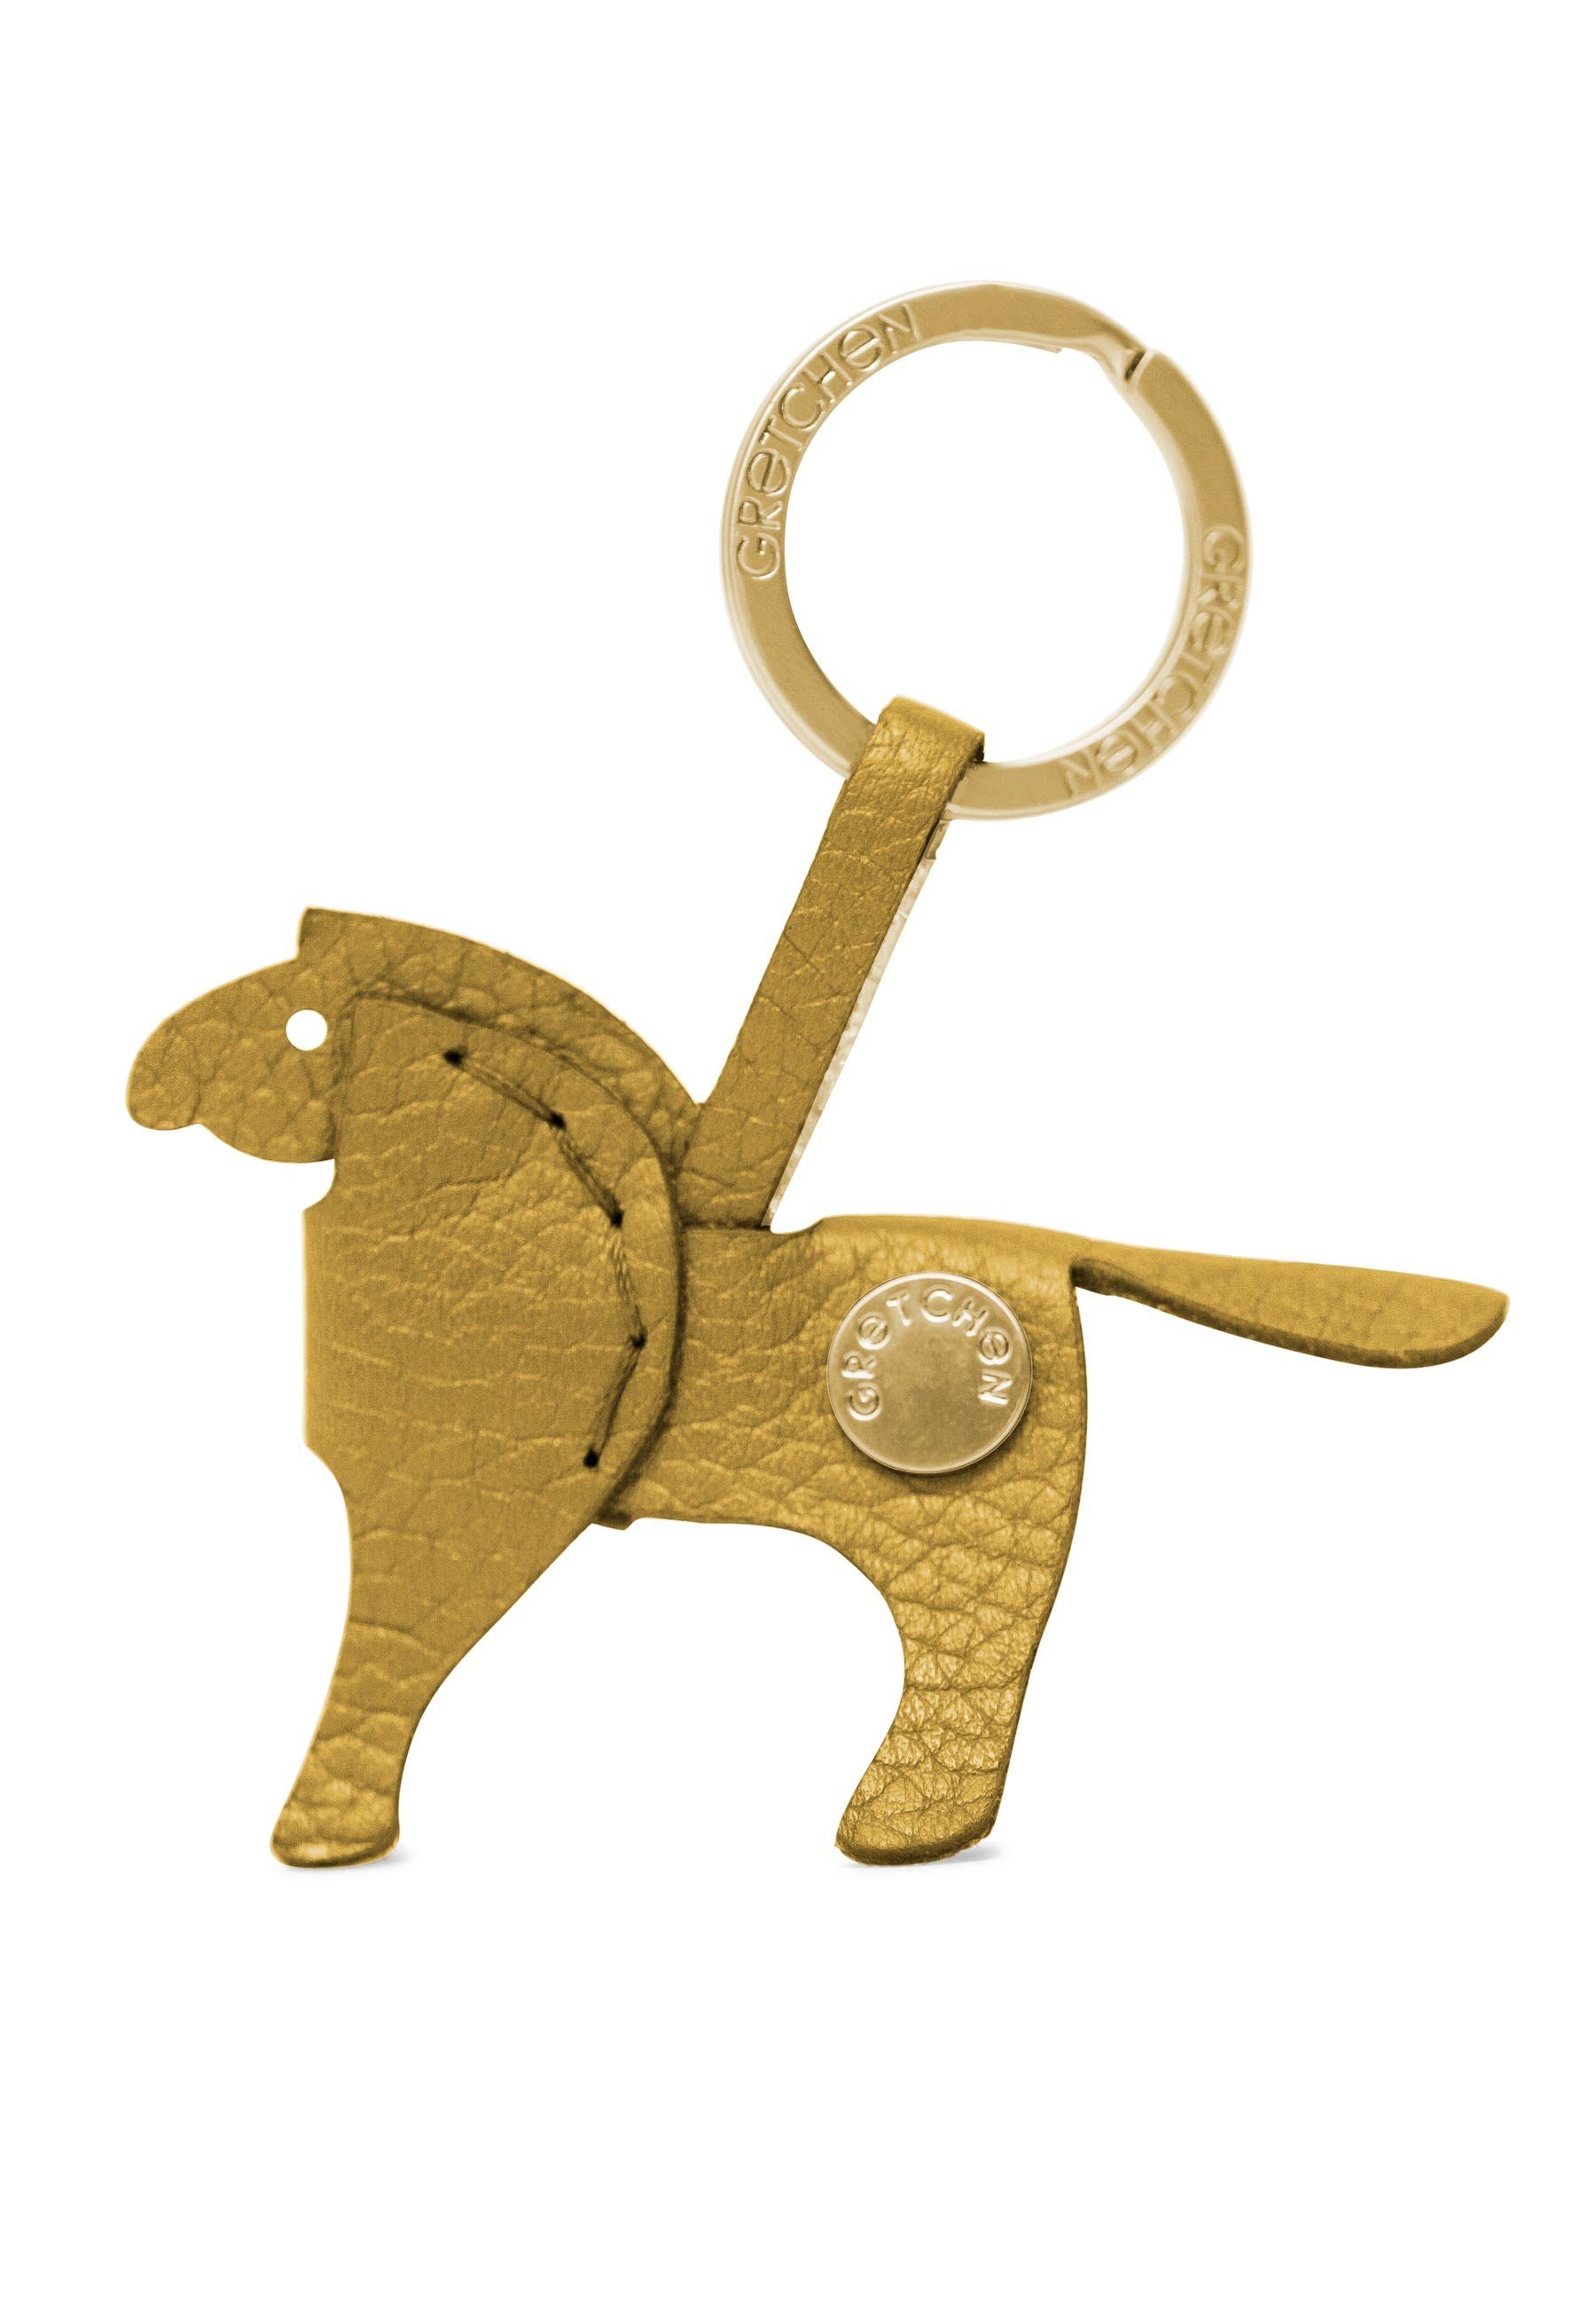 GRETCHEN Schlüsselanhänger Pony Keyring, aus italienischem Kalbsleder gelb-goldfarben | Schlüsselanhänger